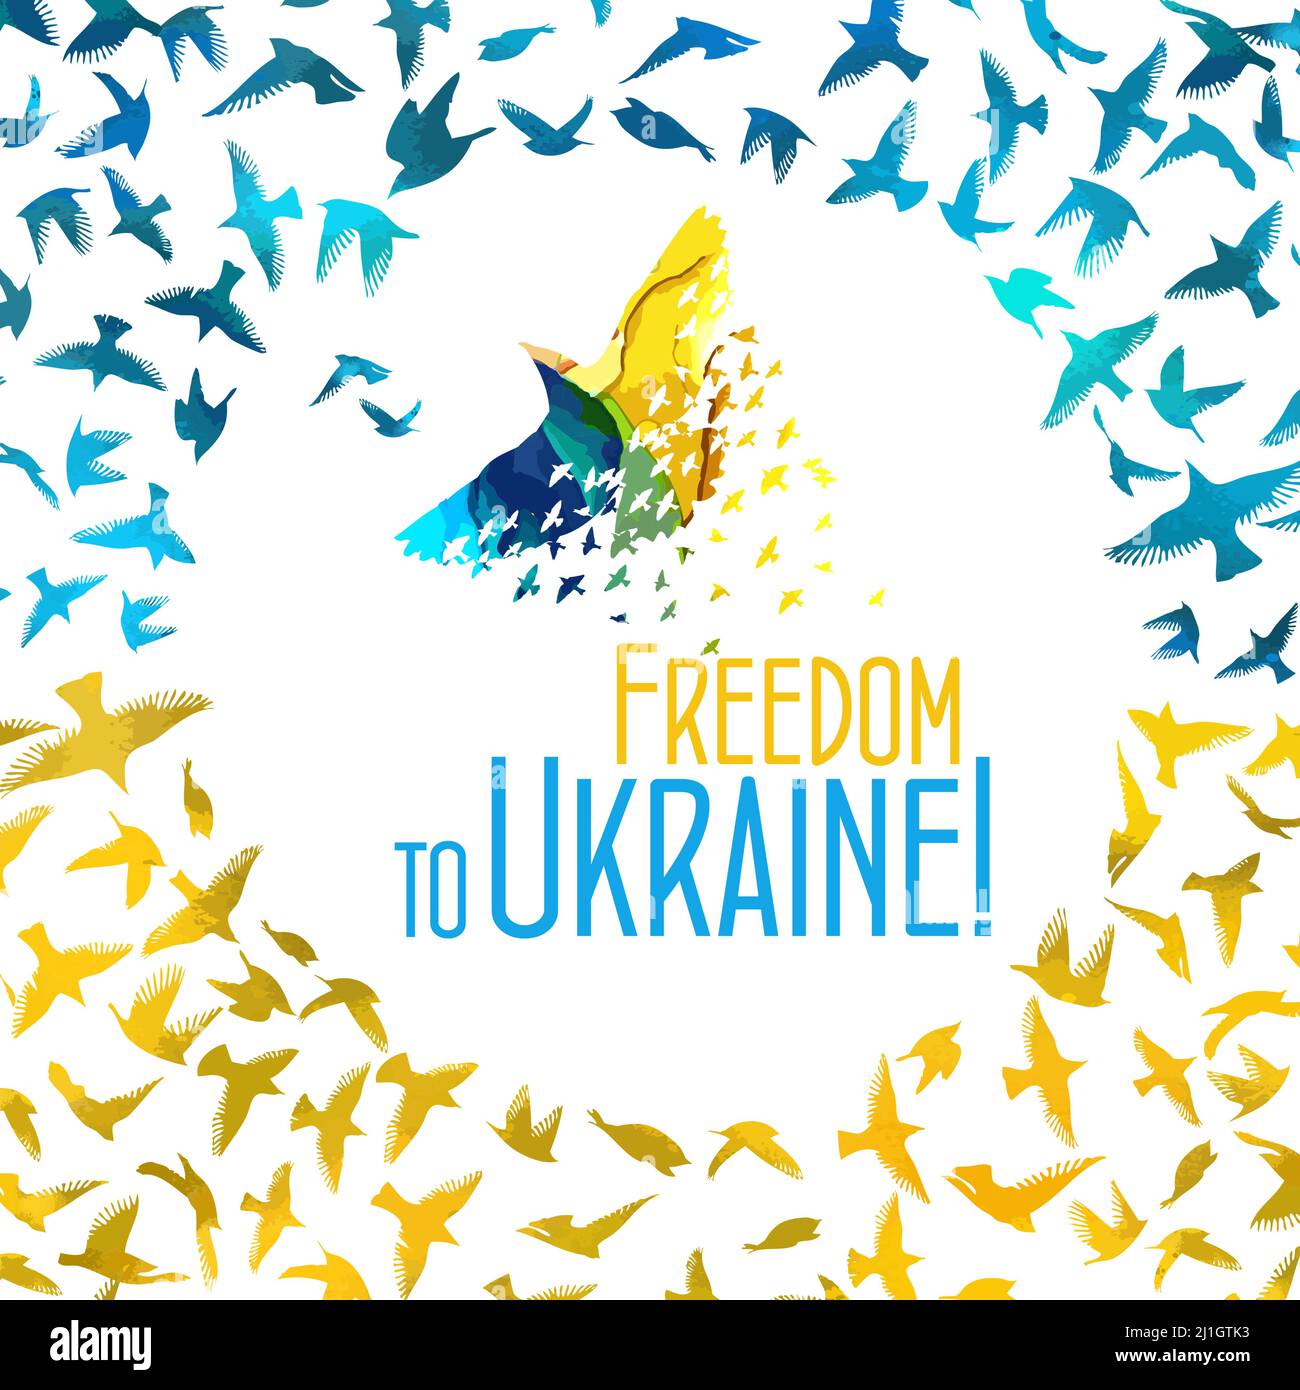 Freedom for Ukraine. Flying birds. Vector illustration Stock Vector